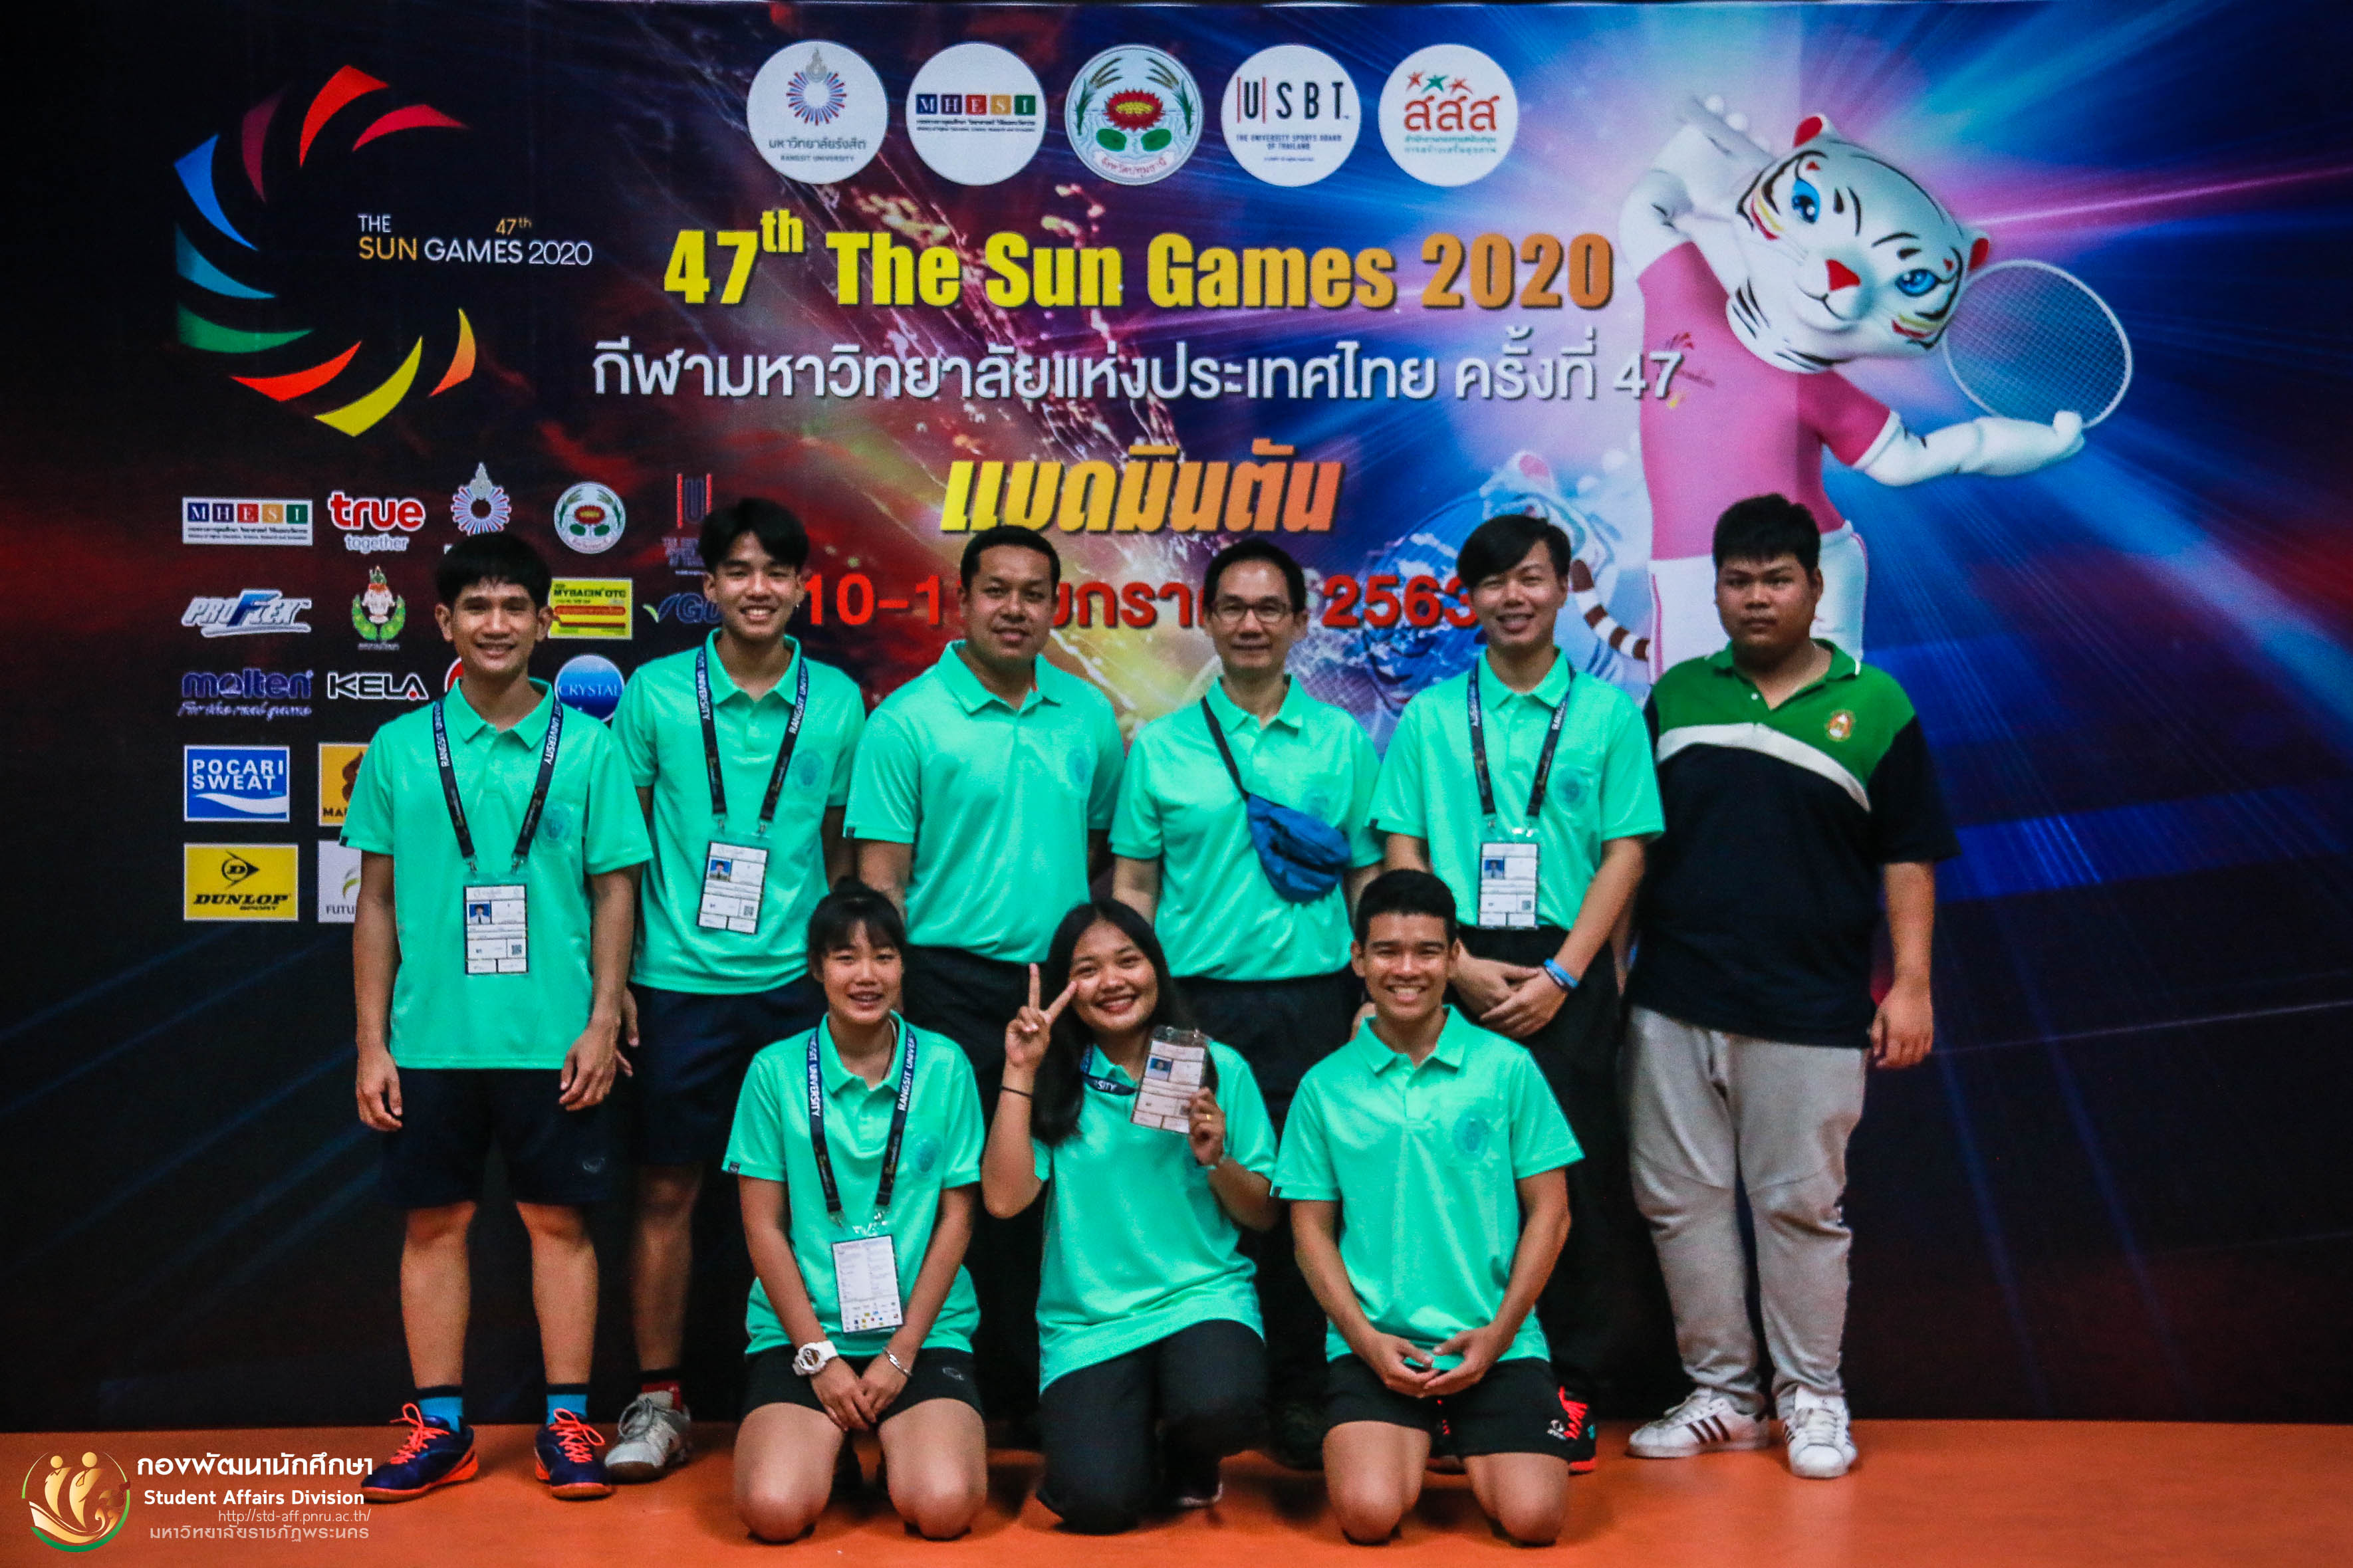 14 มกราคม 2563 การแข่งขันกีฬามหาวิทยาลัยแห่งประเทศไทย ครั้งที่ 47 "The Sun Games 2020" ระหว่างวันที่ 10 - 19 มกราคม 2563 ณ มหาวิทยาลัยรังสิต